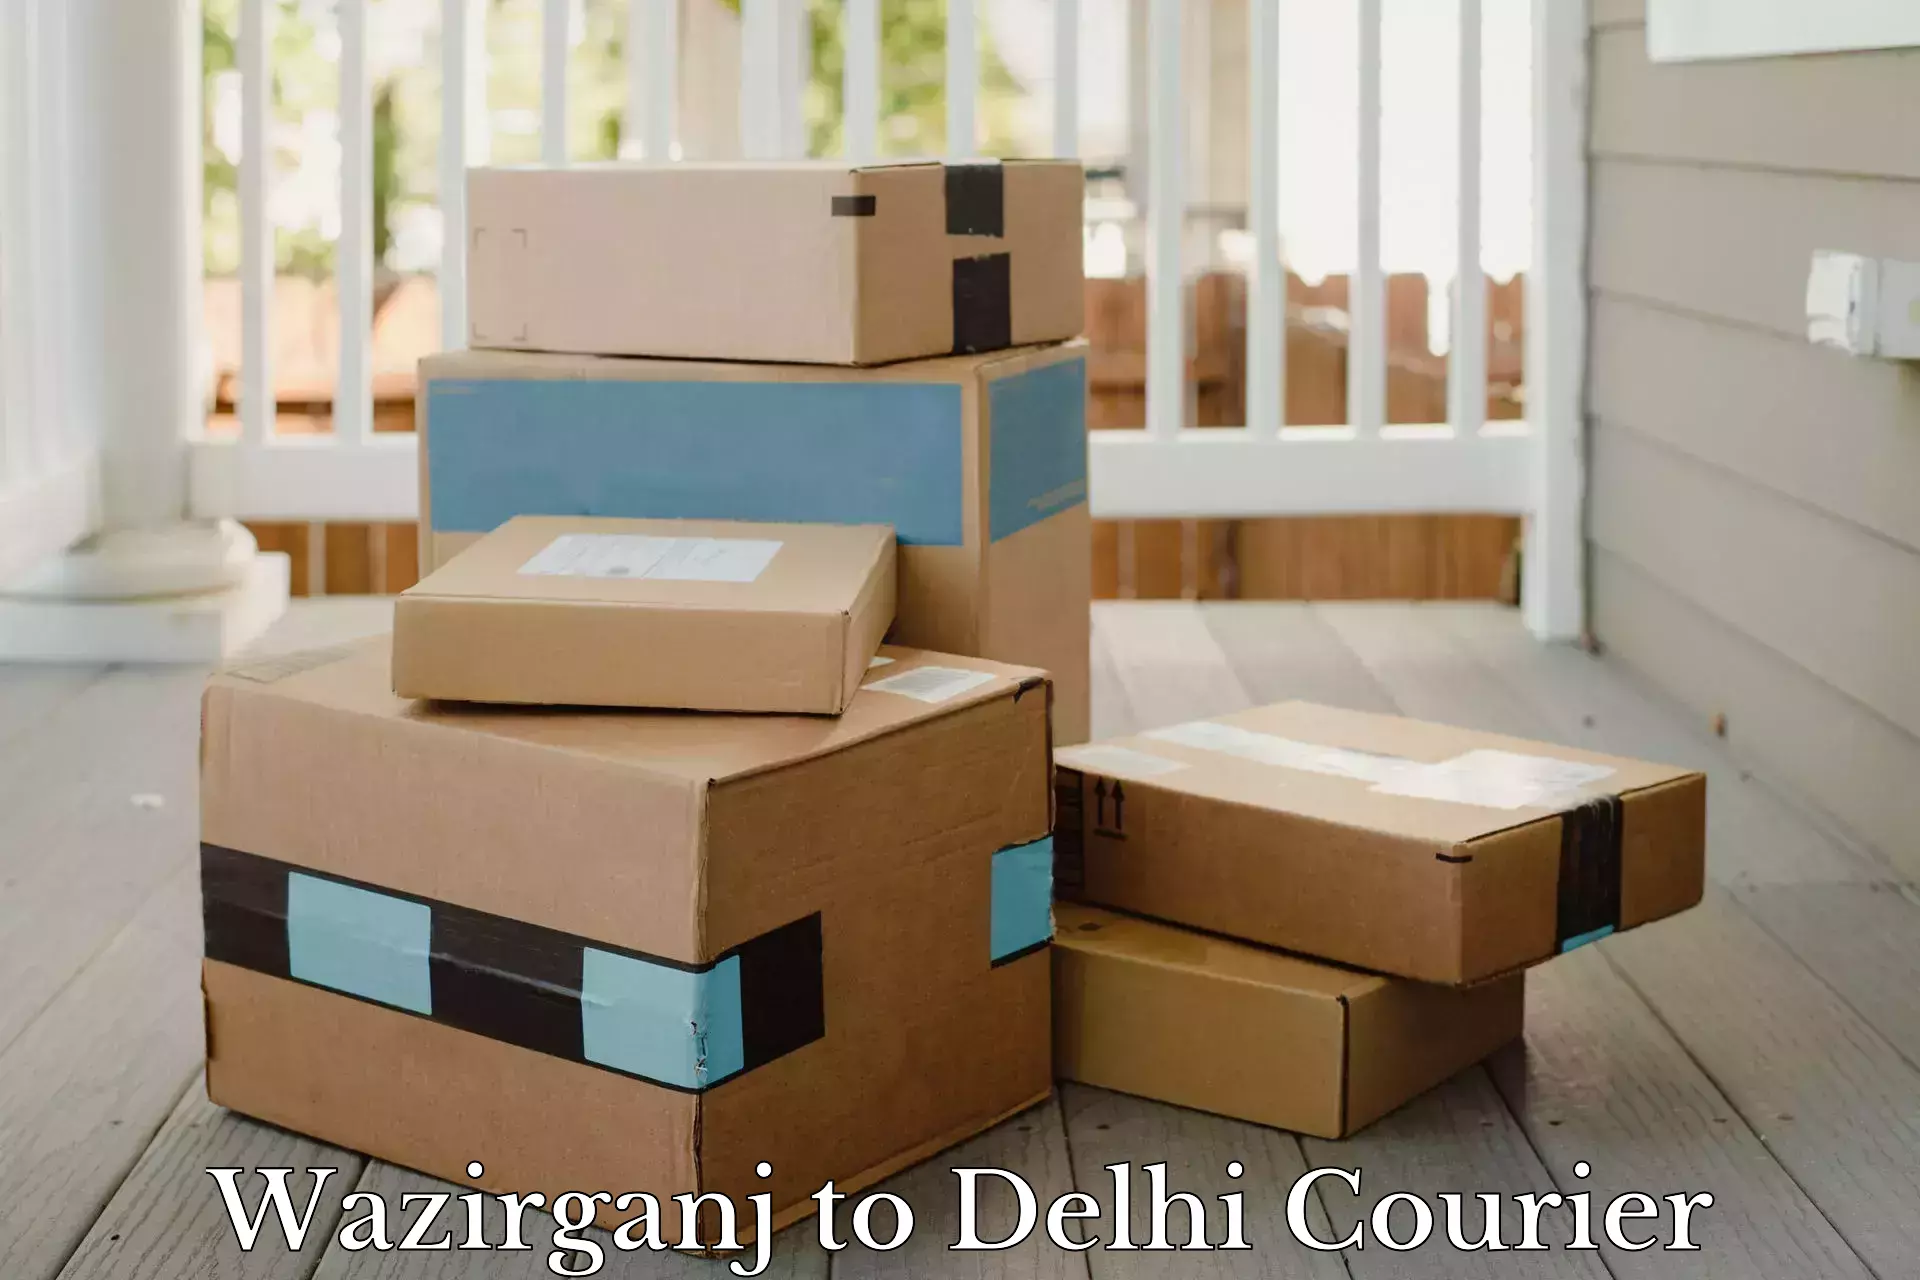 Quick dispatch service Wazirganj to NIT Delhi